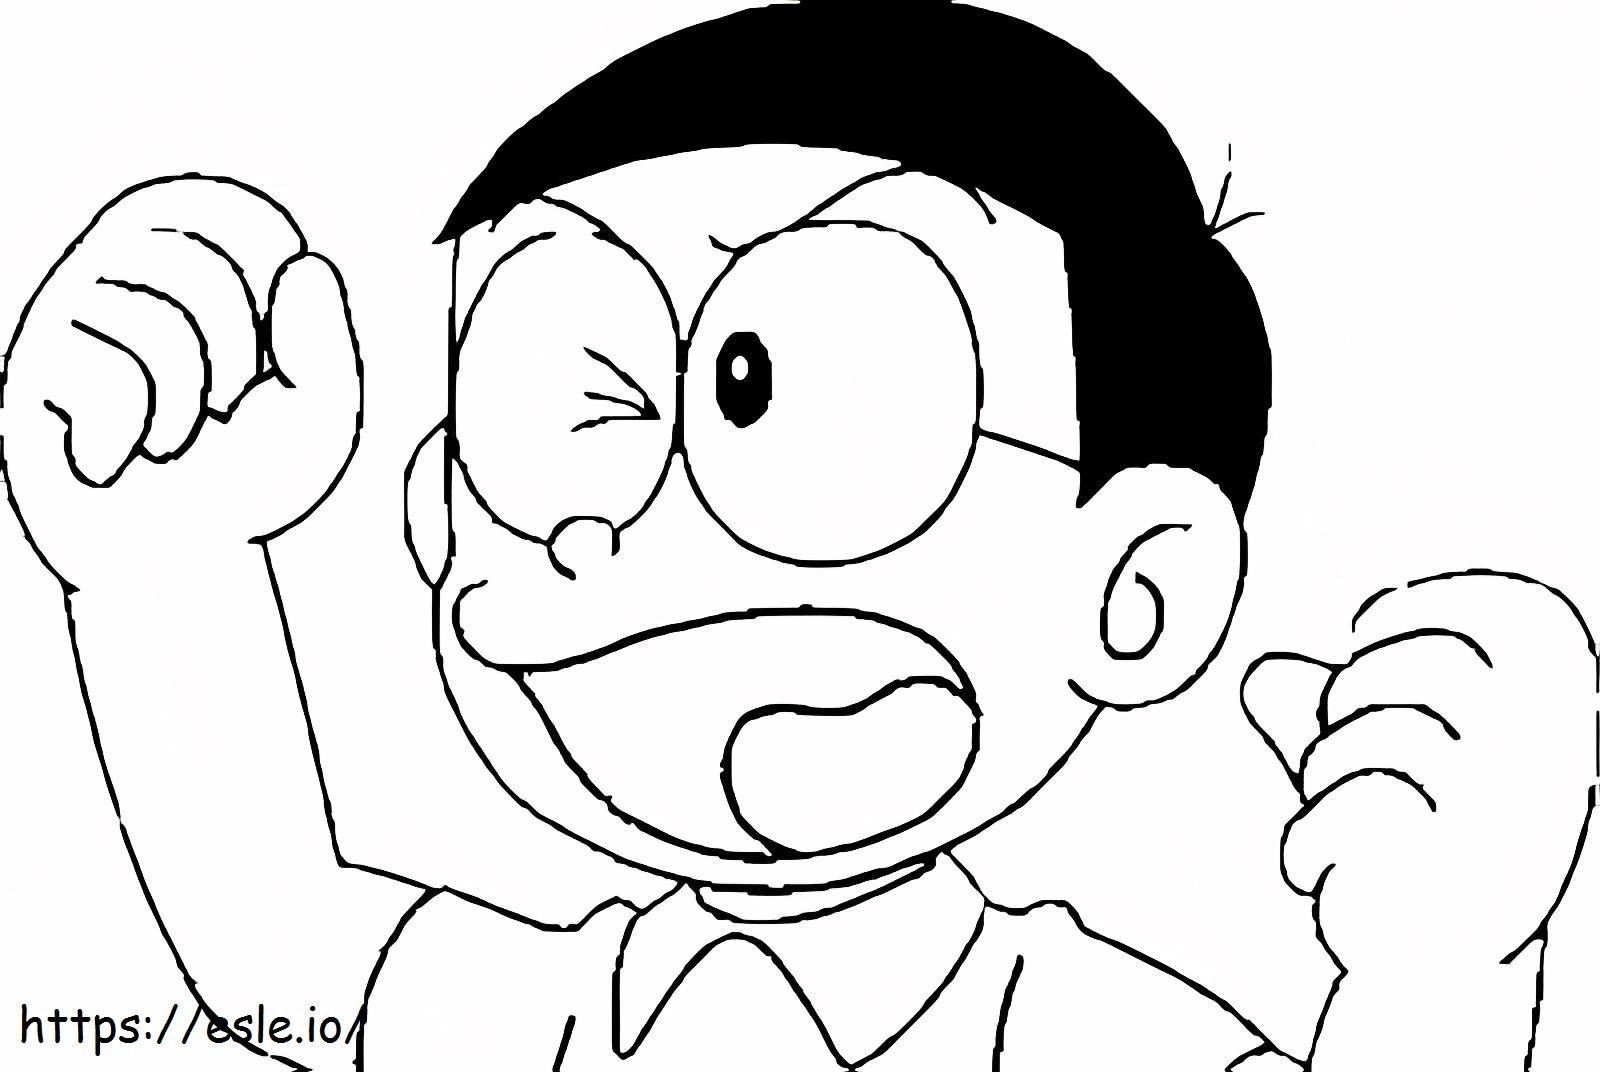 Wütende Nobita ausmalbilder